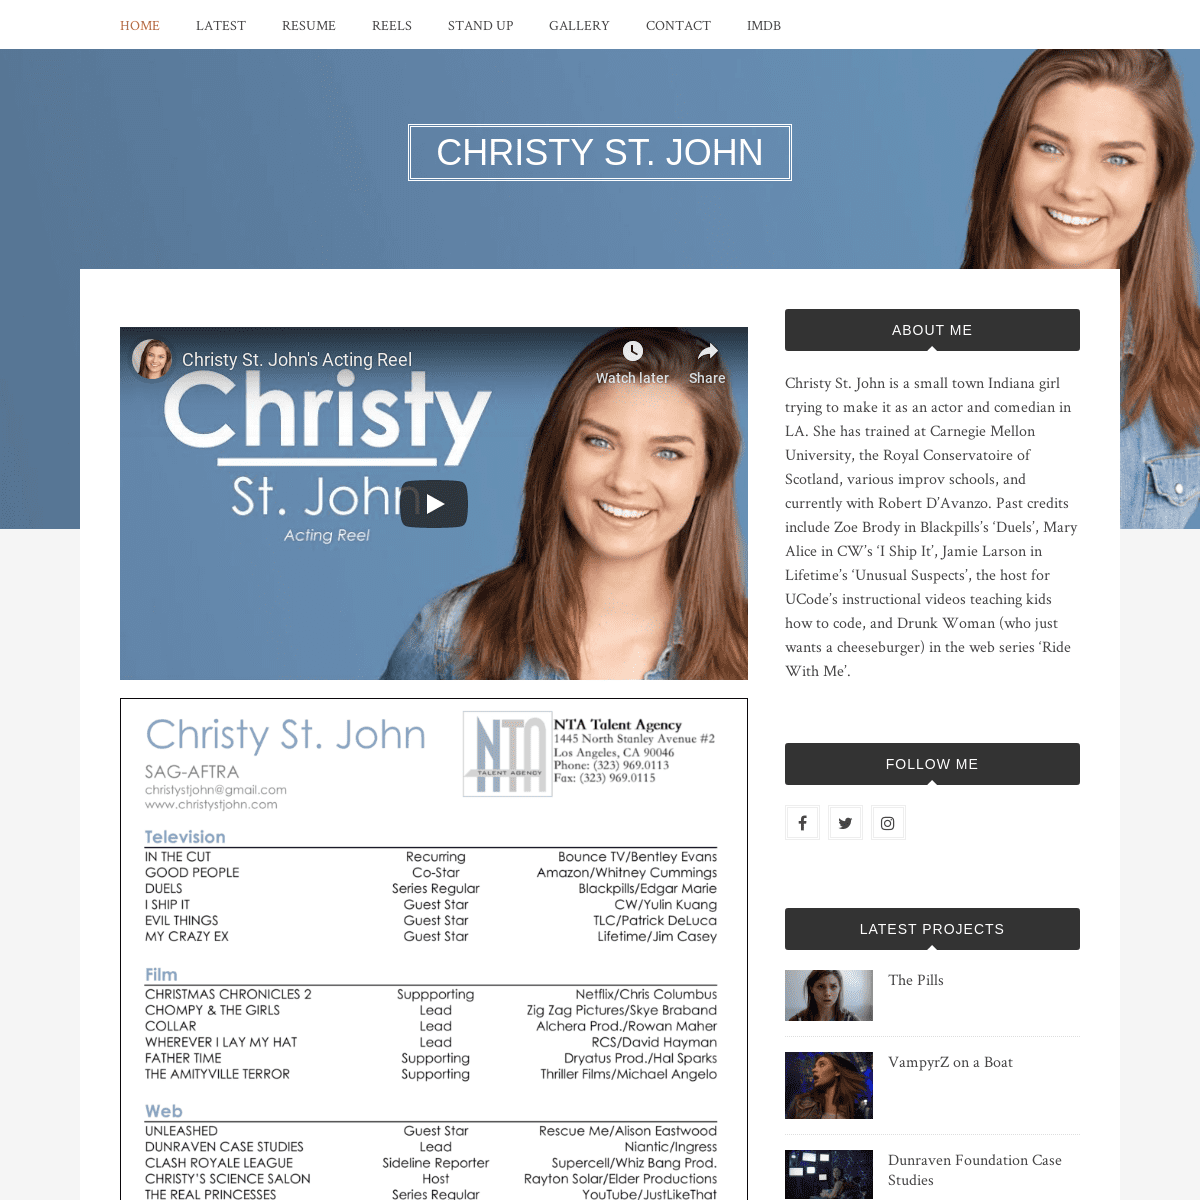 A complete backup of christystjohn.com